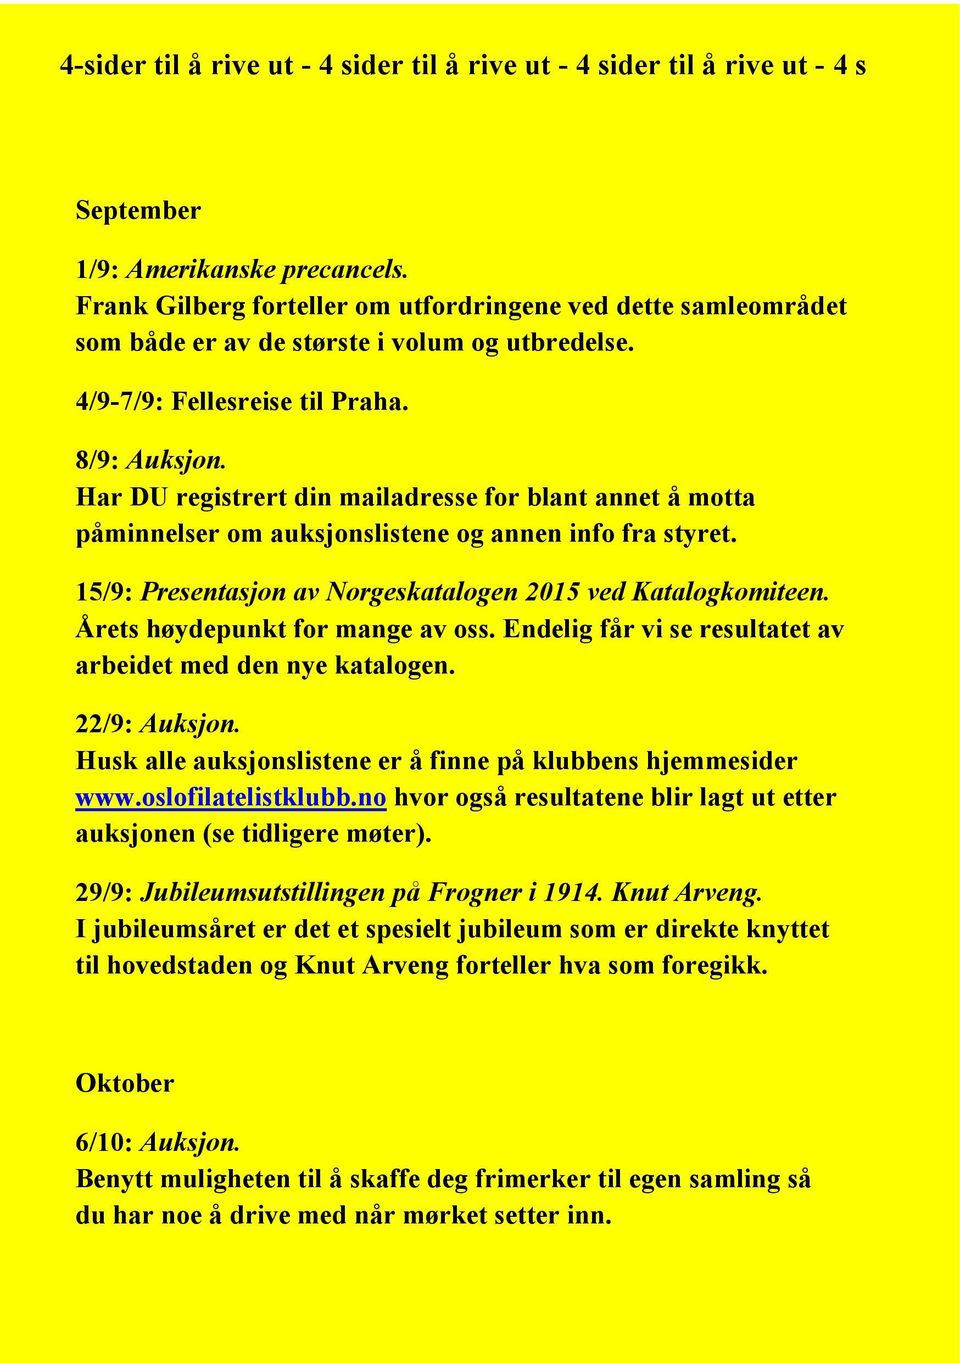 Har DU registrert din mailadresse for blant annet å motta påminnelser om auksjonslistene og annen info fra styret. 15/9: Presentasjon av Norgeskatalogen 2015 ved Katalogkomiteen.